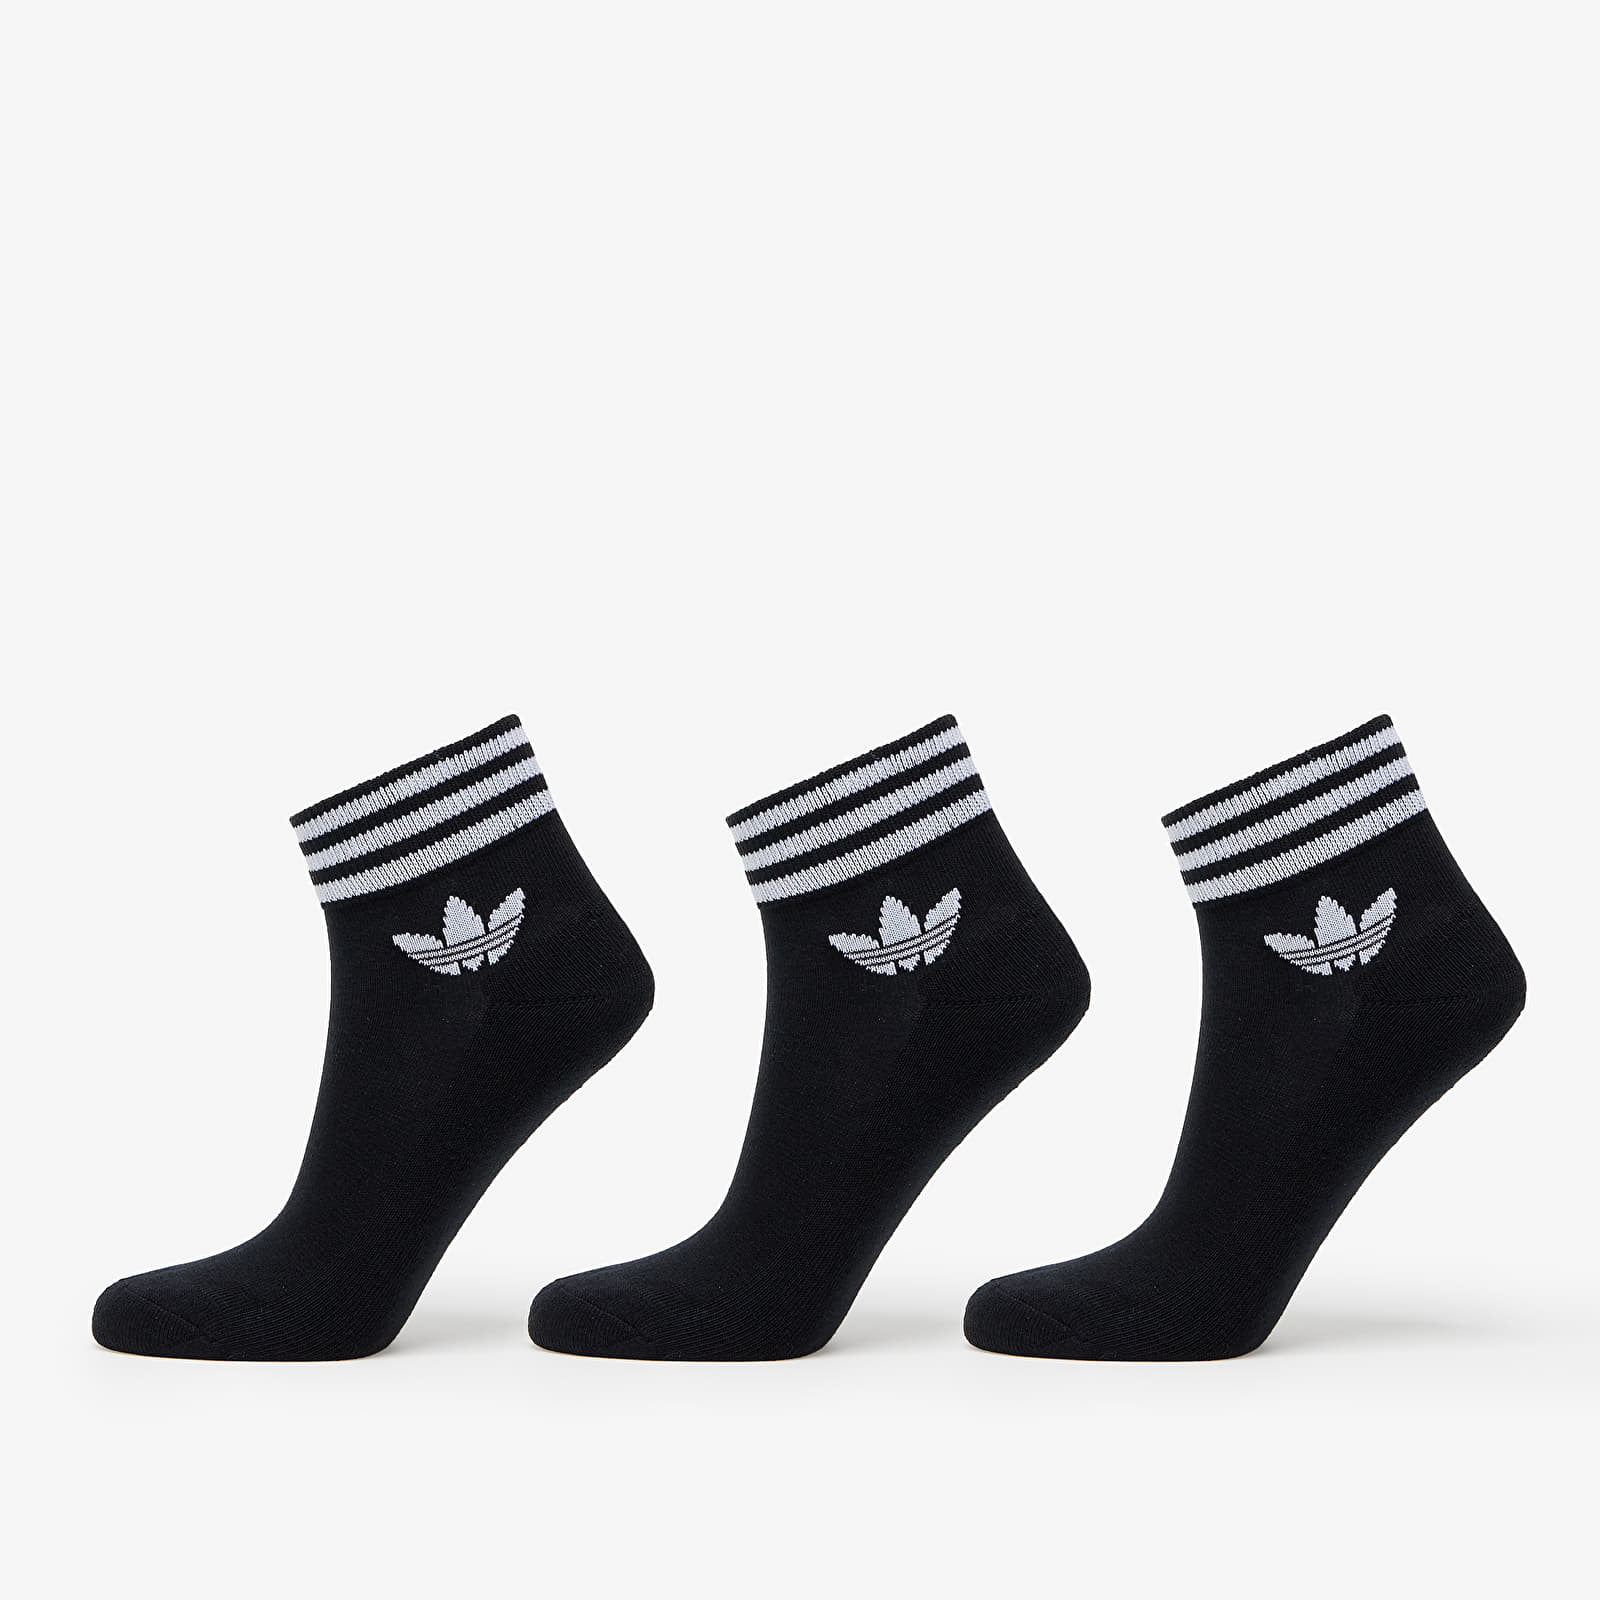 Socks adidas Originals Trefoil Ankle Socks 3-Pack Black/ White